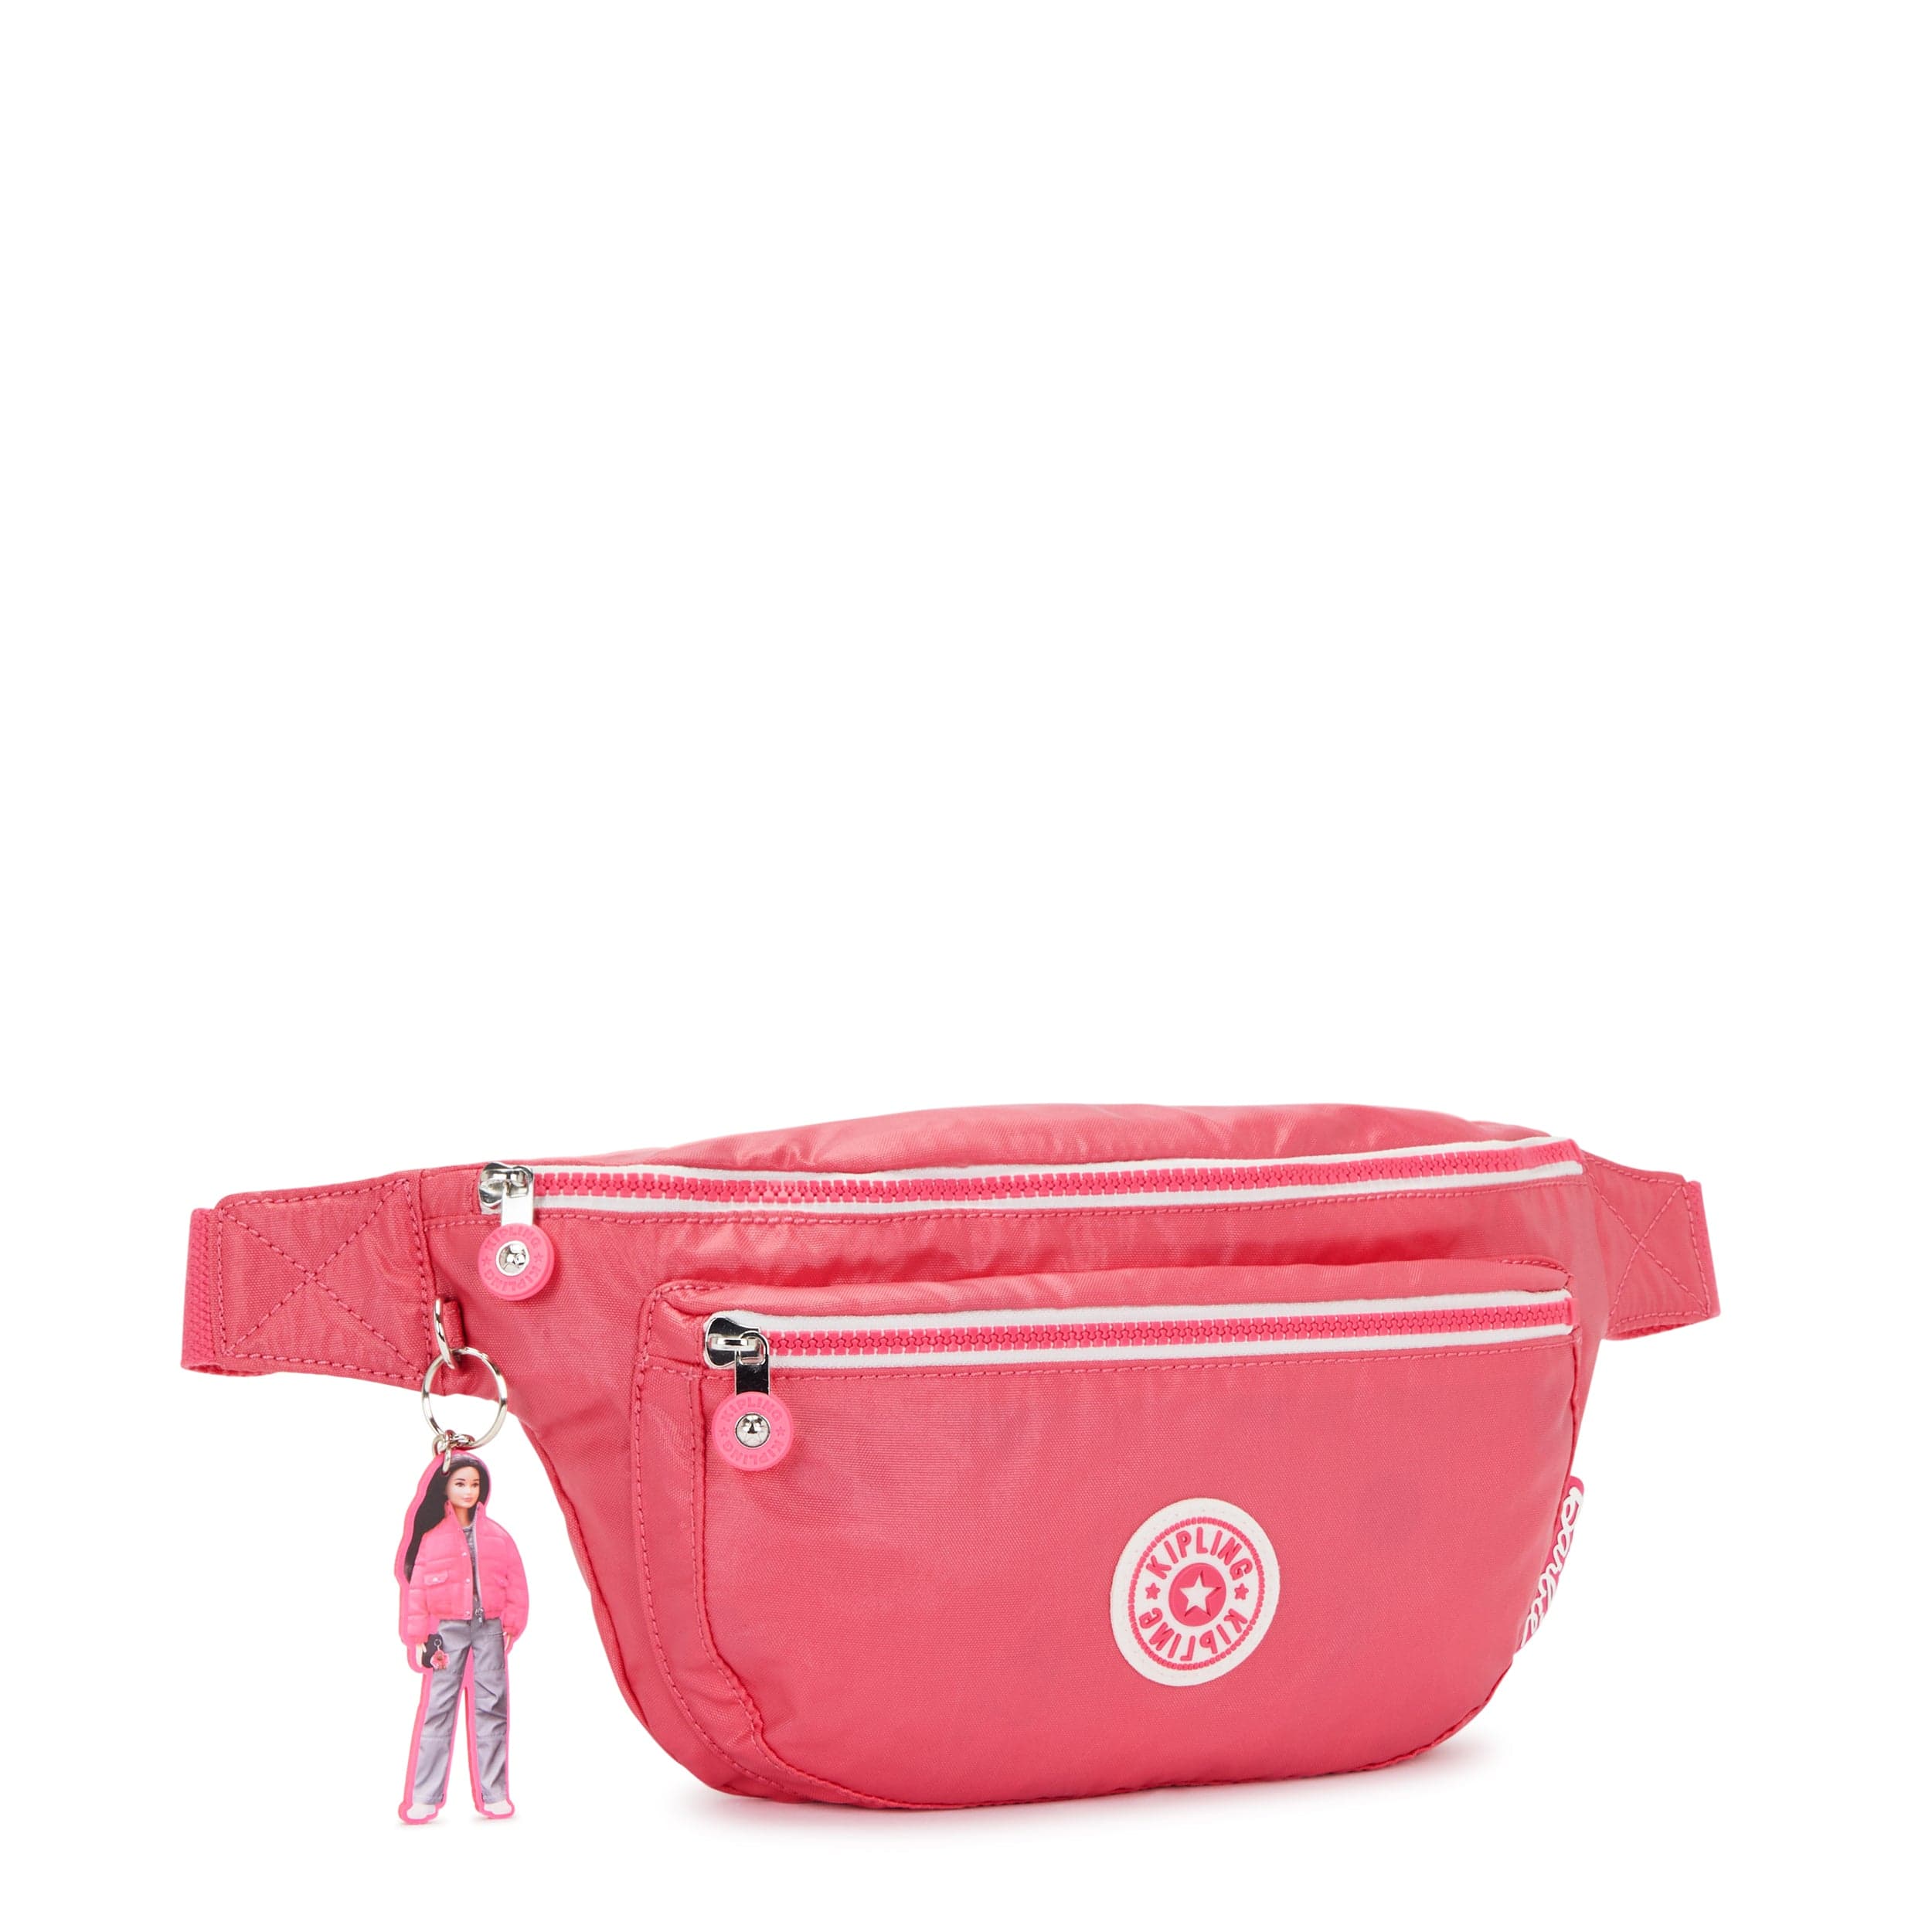 Kipling-Yasemina Xl-Large Waistbag-Lively Pink-I7625-B1R